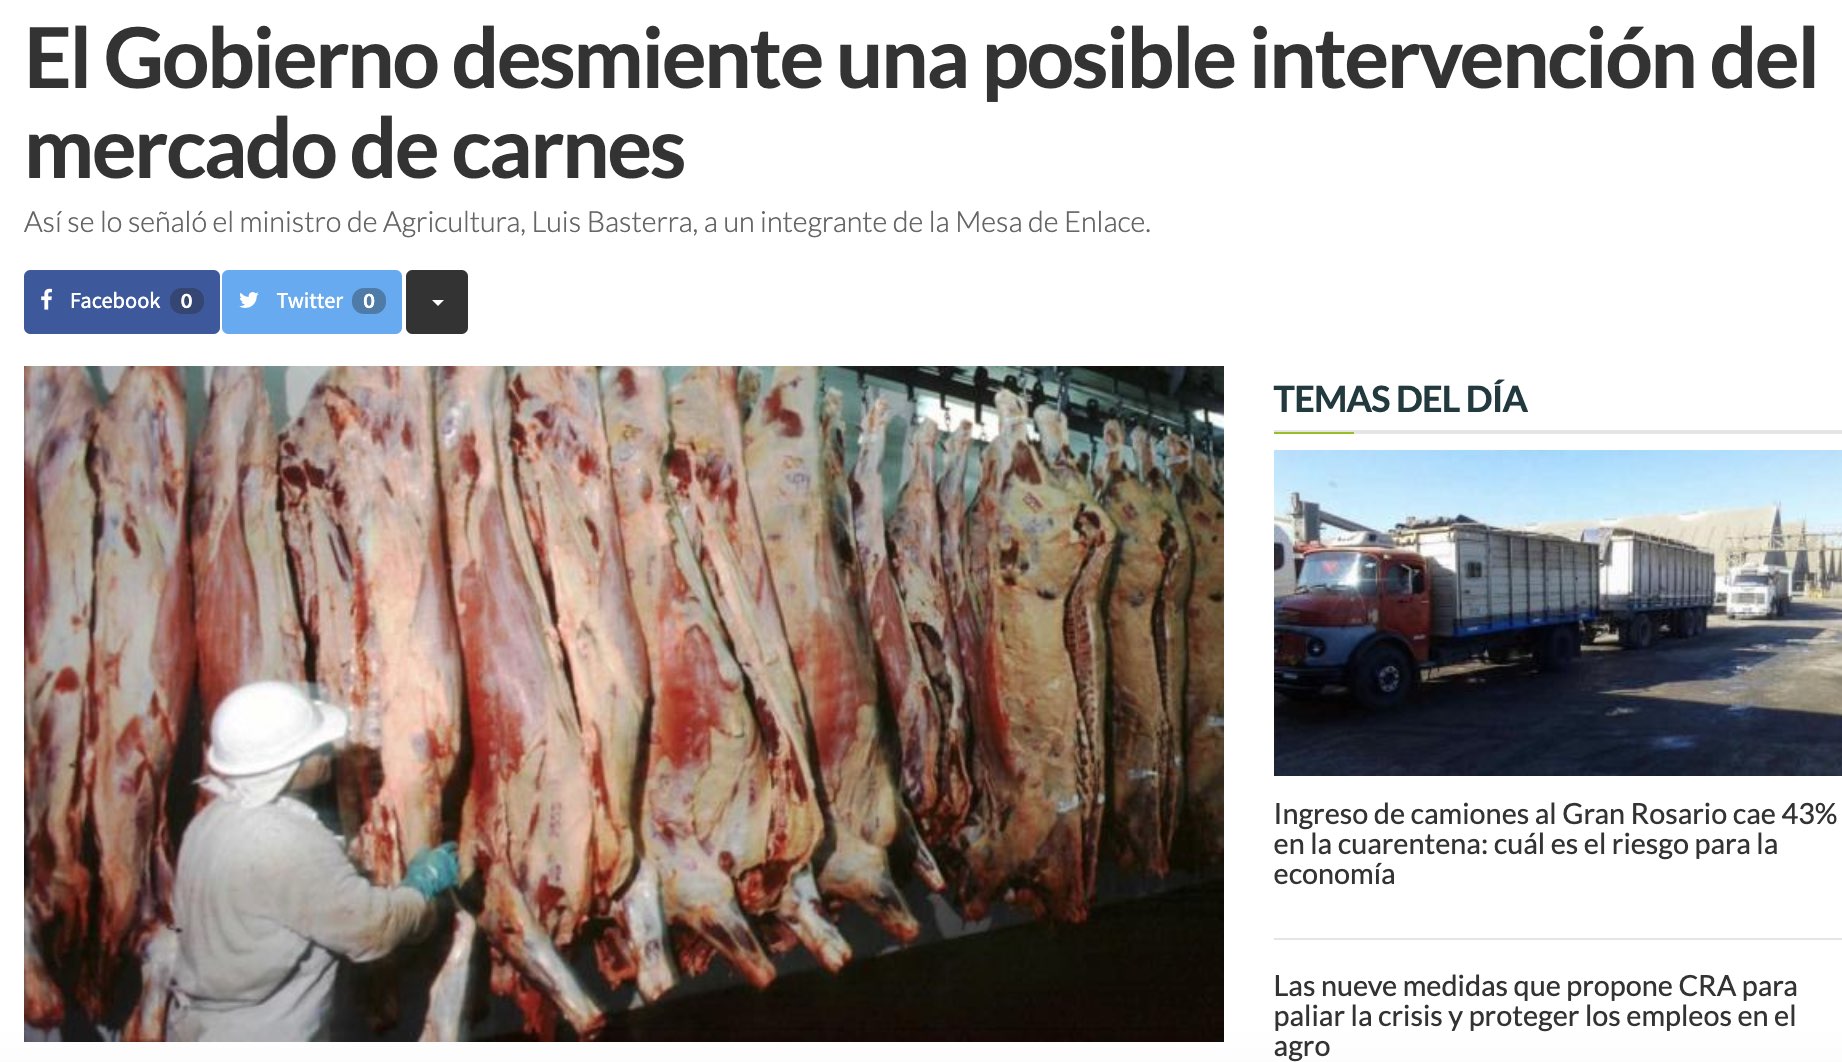 intervencion del mercado de carne precios meximos liniers luis basterra paula español